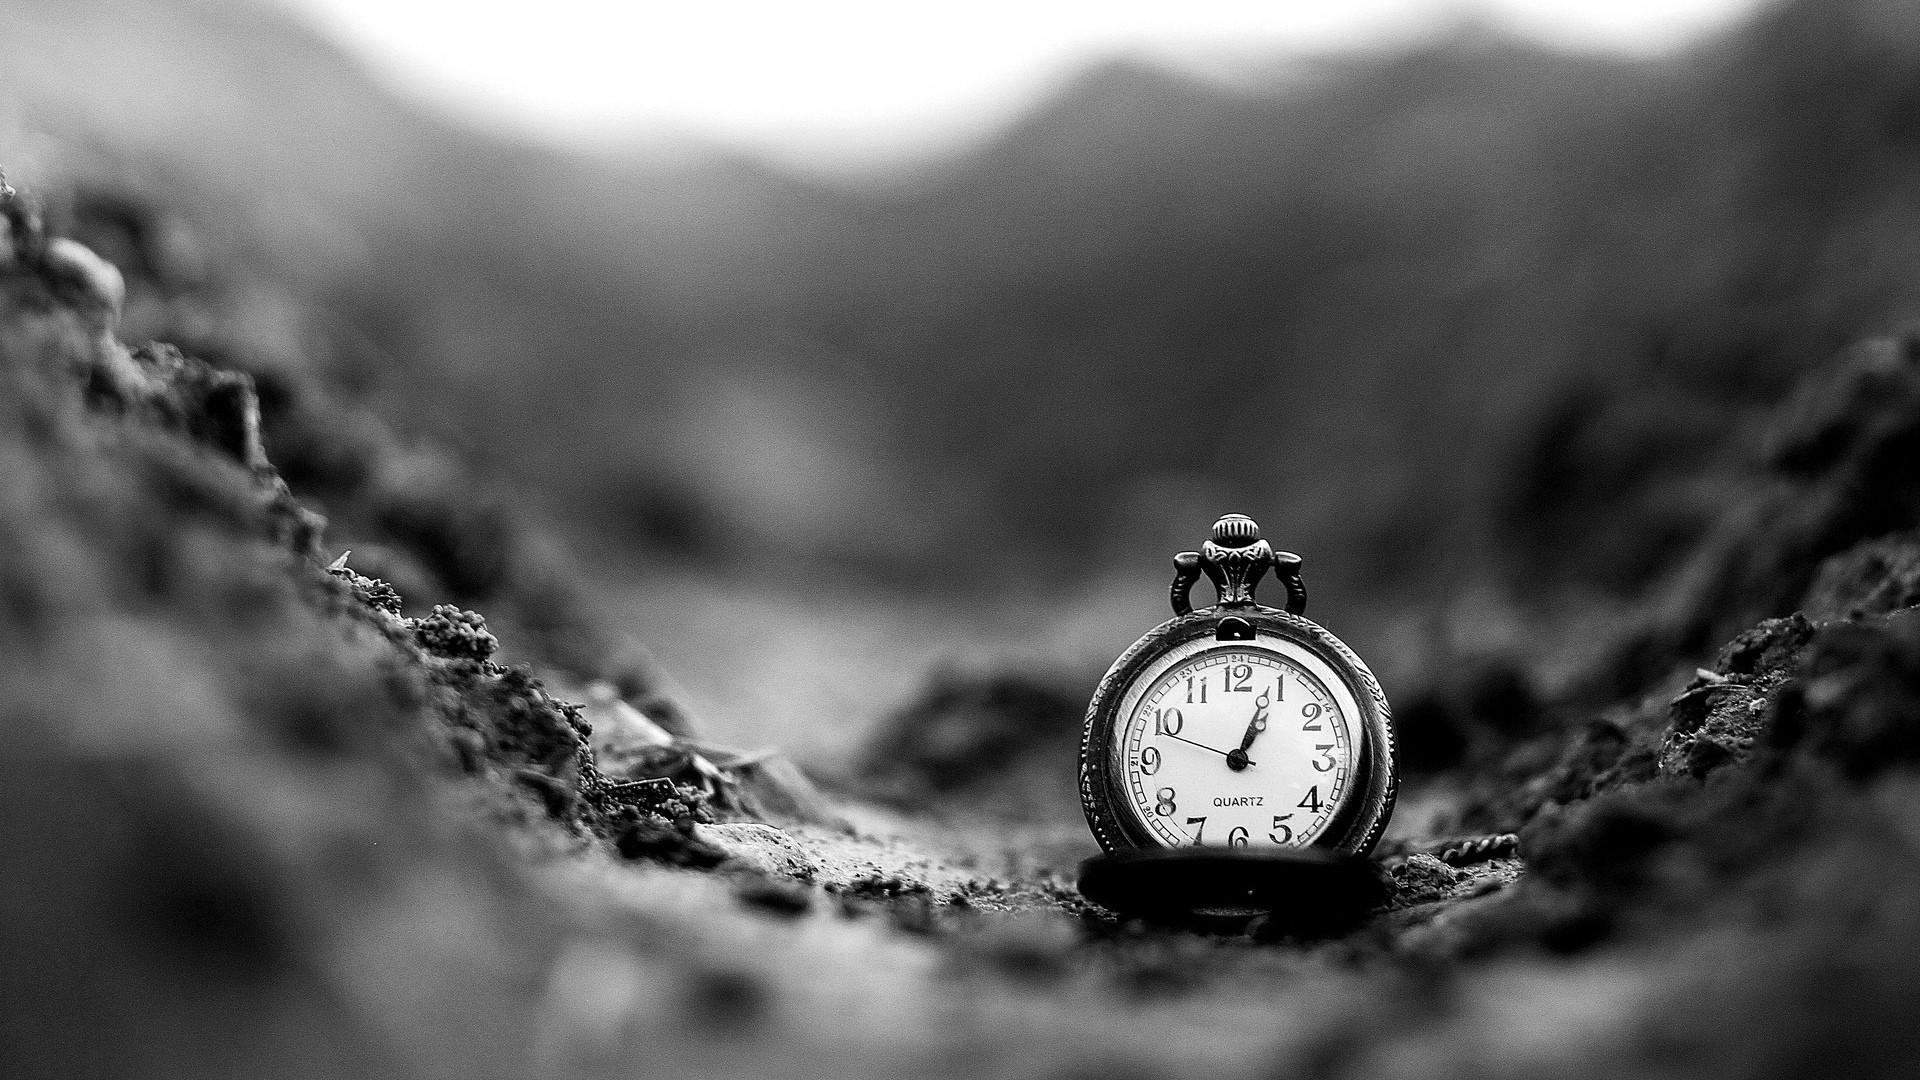  La invención del reloj; necesidad de medir el tiempo